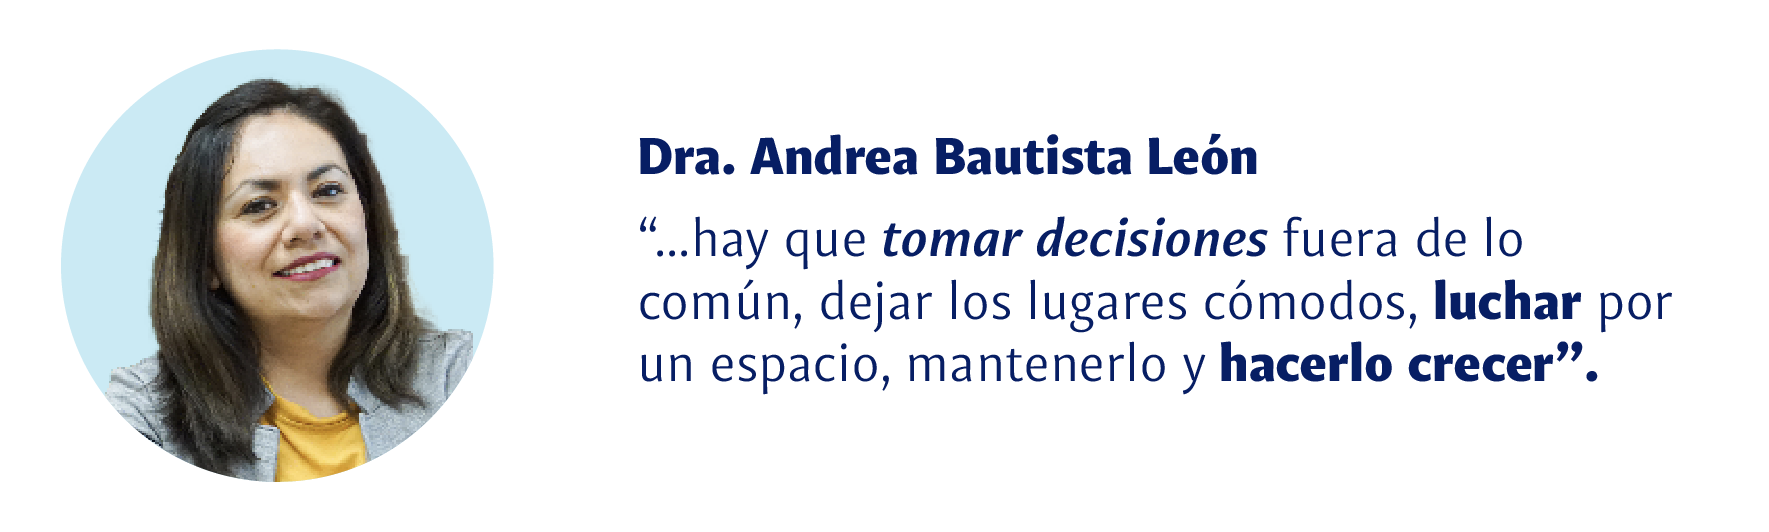 Dra. Andrea Bautista León: Hay que tomar decisiones fuera de lo común, dejar los lugares cómodos, luchar por un espacio, mantenerlo y hacerlo crecer.